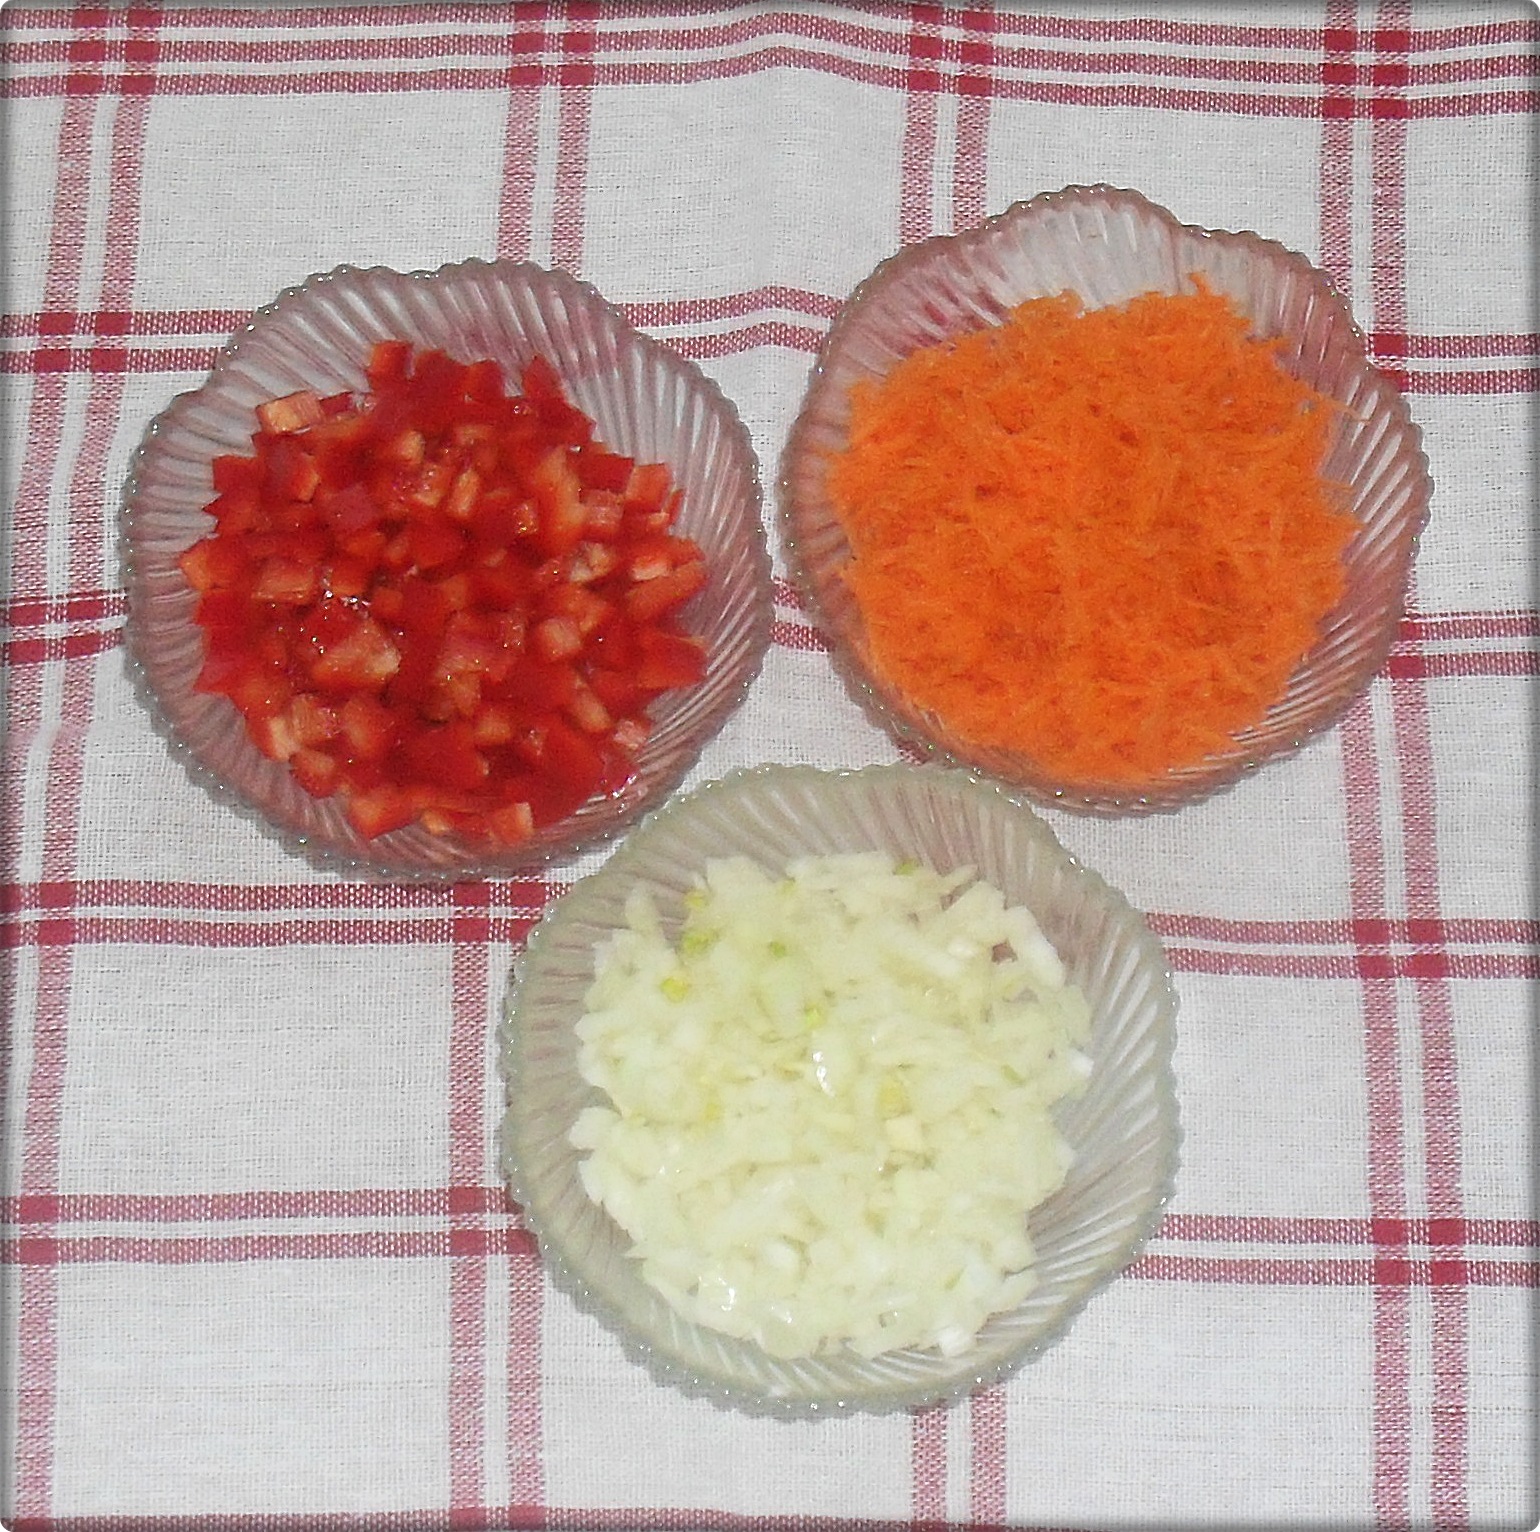 Mancare de legume cu orez